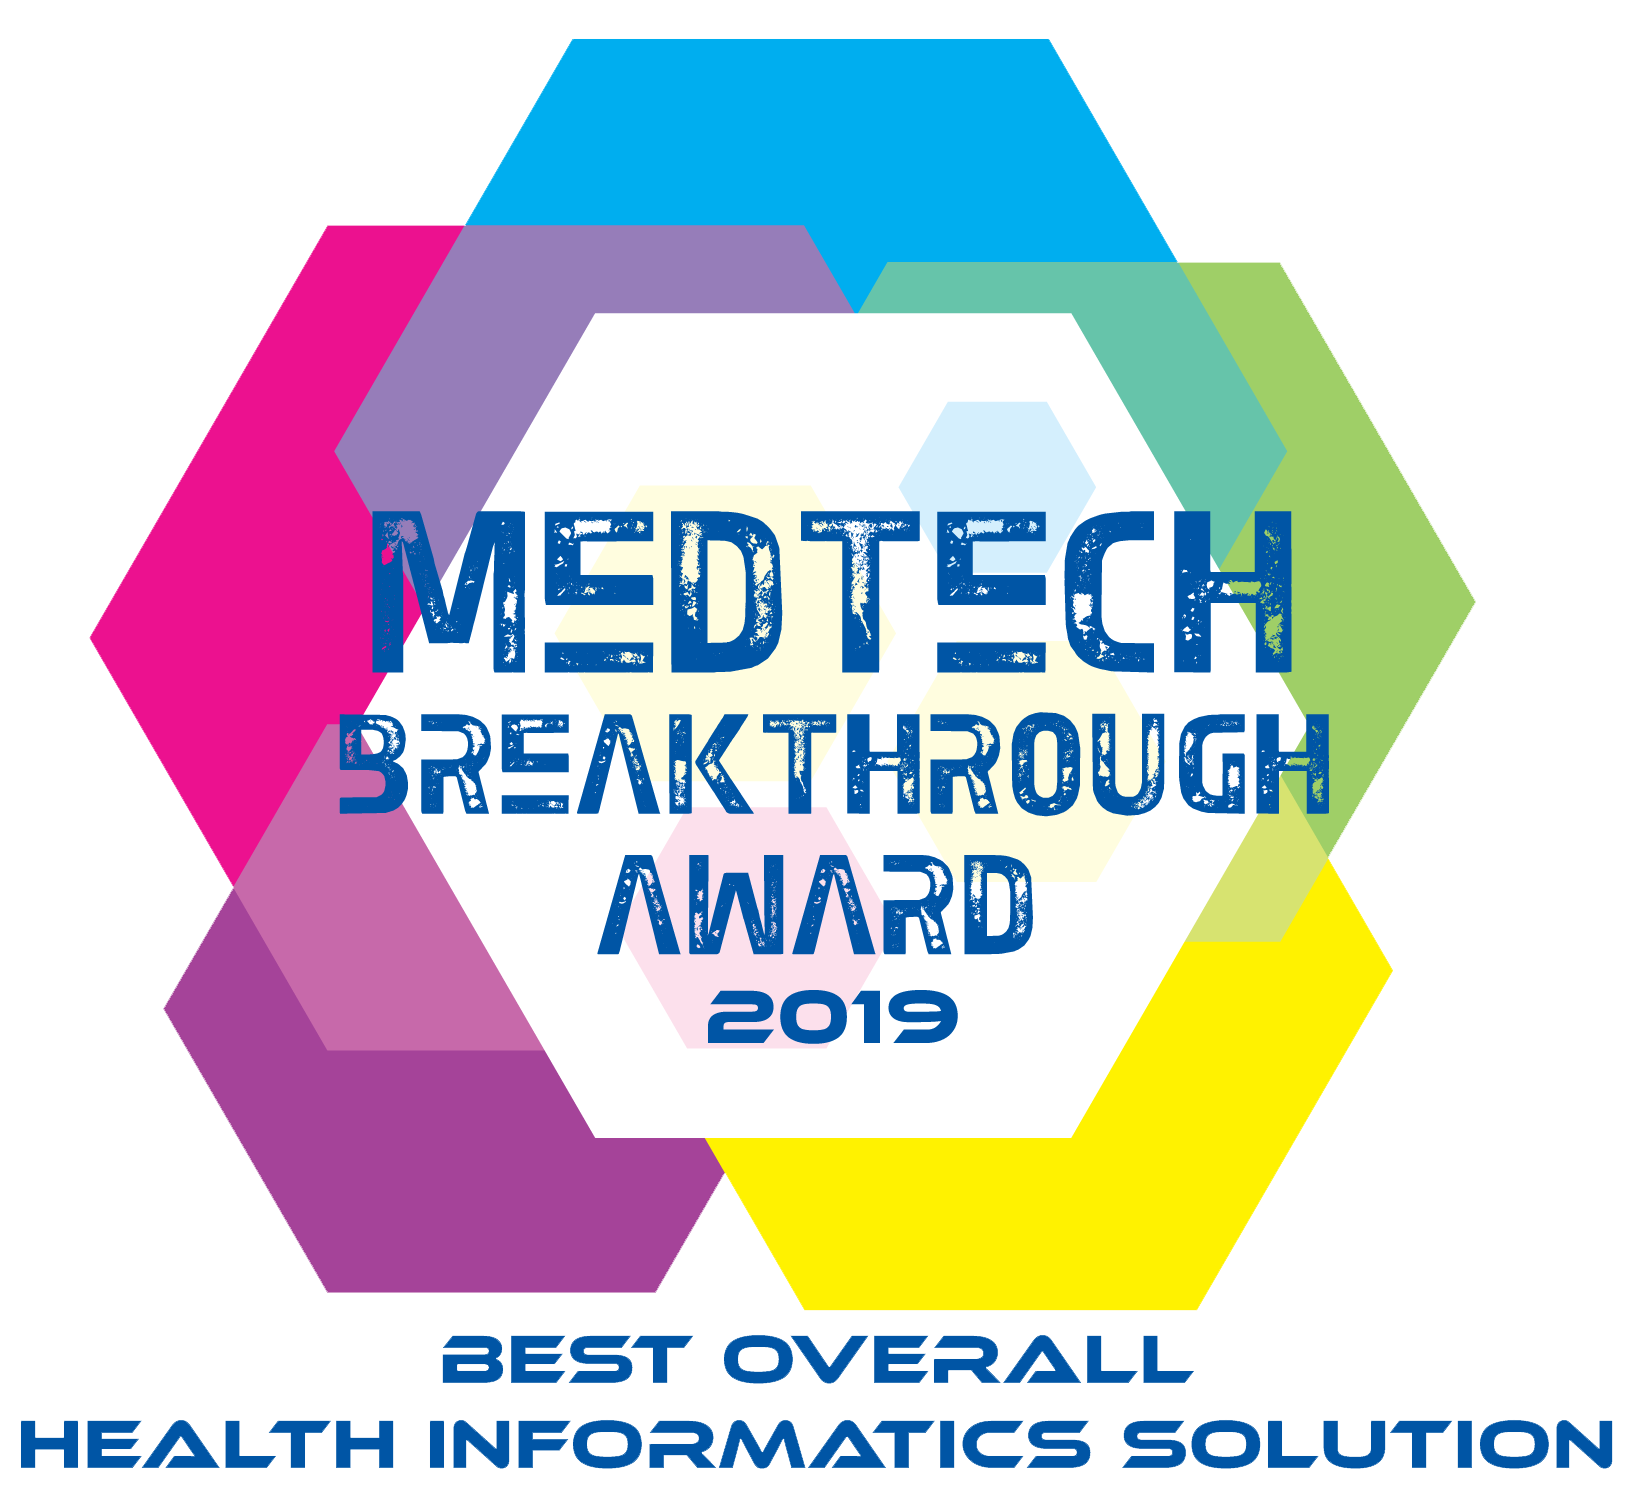 OntarioMD's Health Report Manager has won a Medtech Breakthrough Award